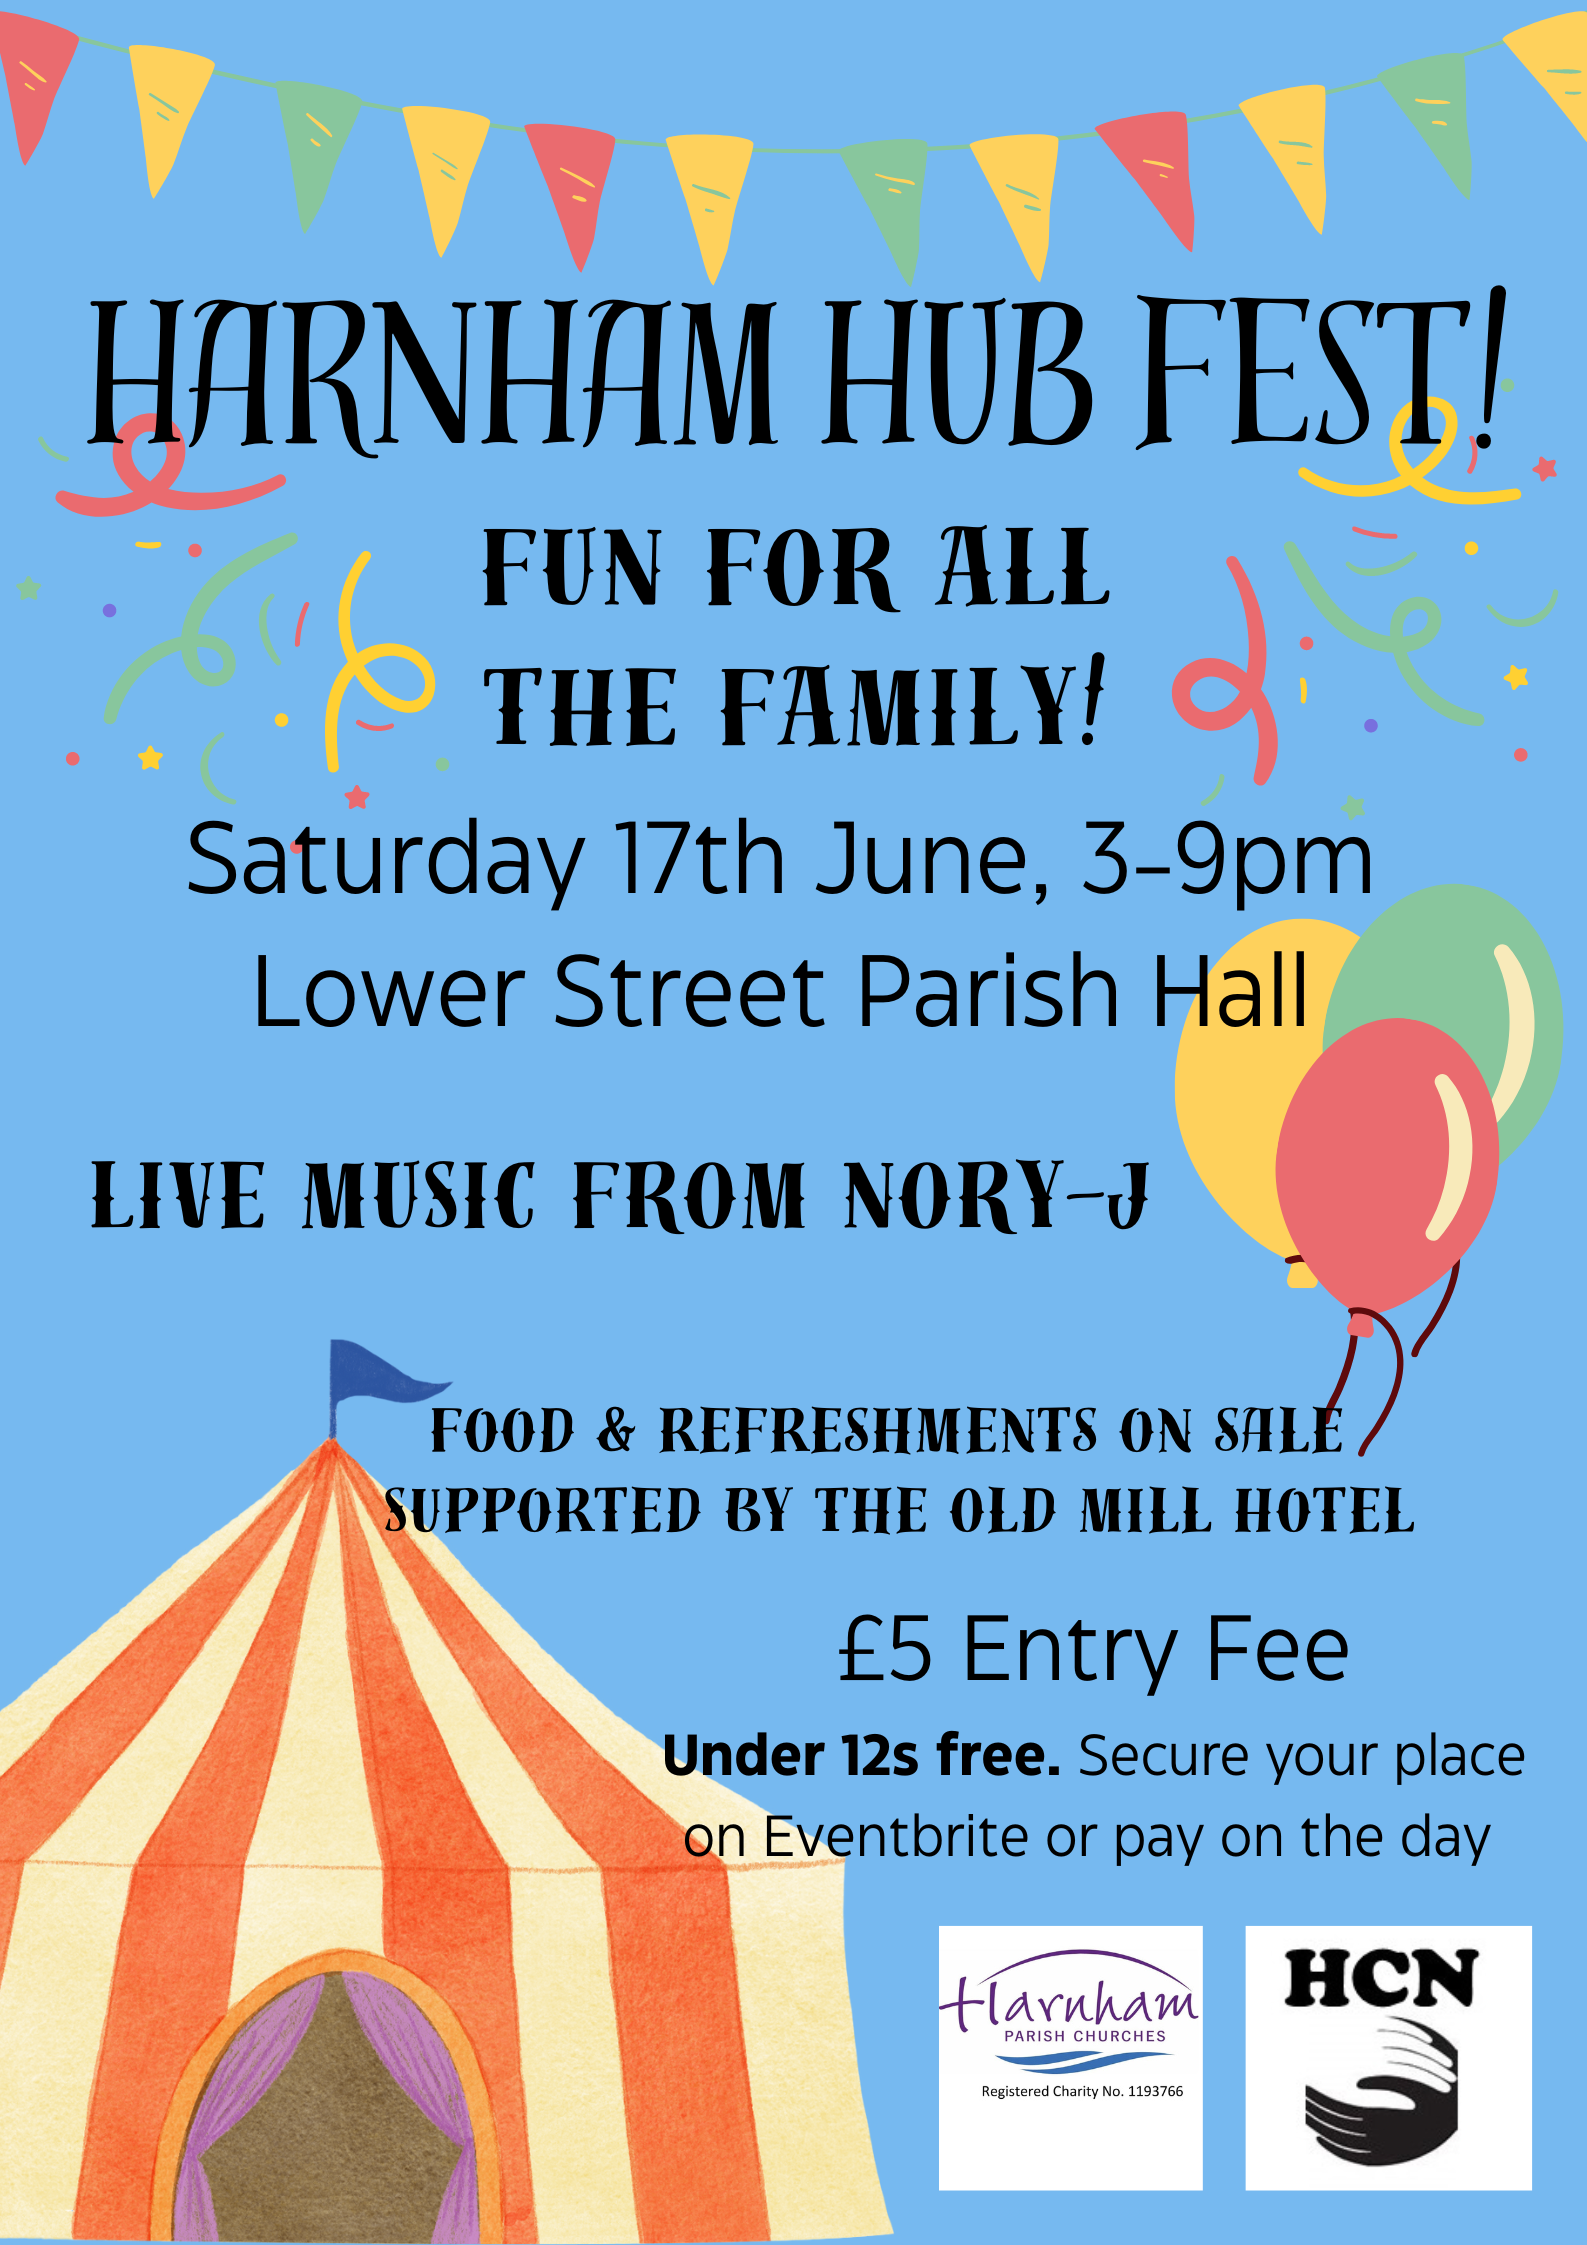 Harnham Hub Fest: live music from Nory-J